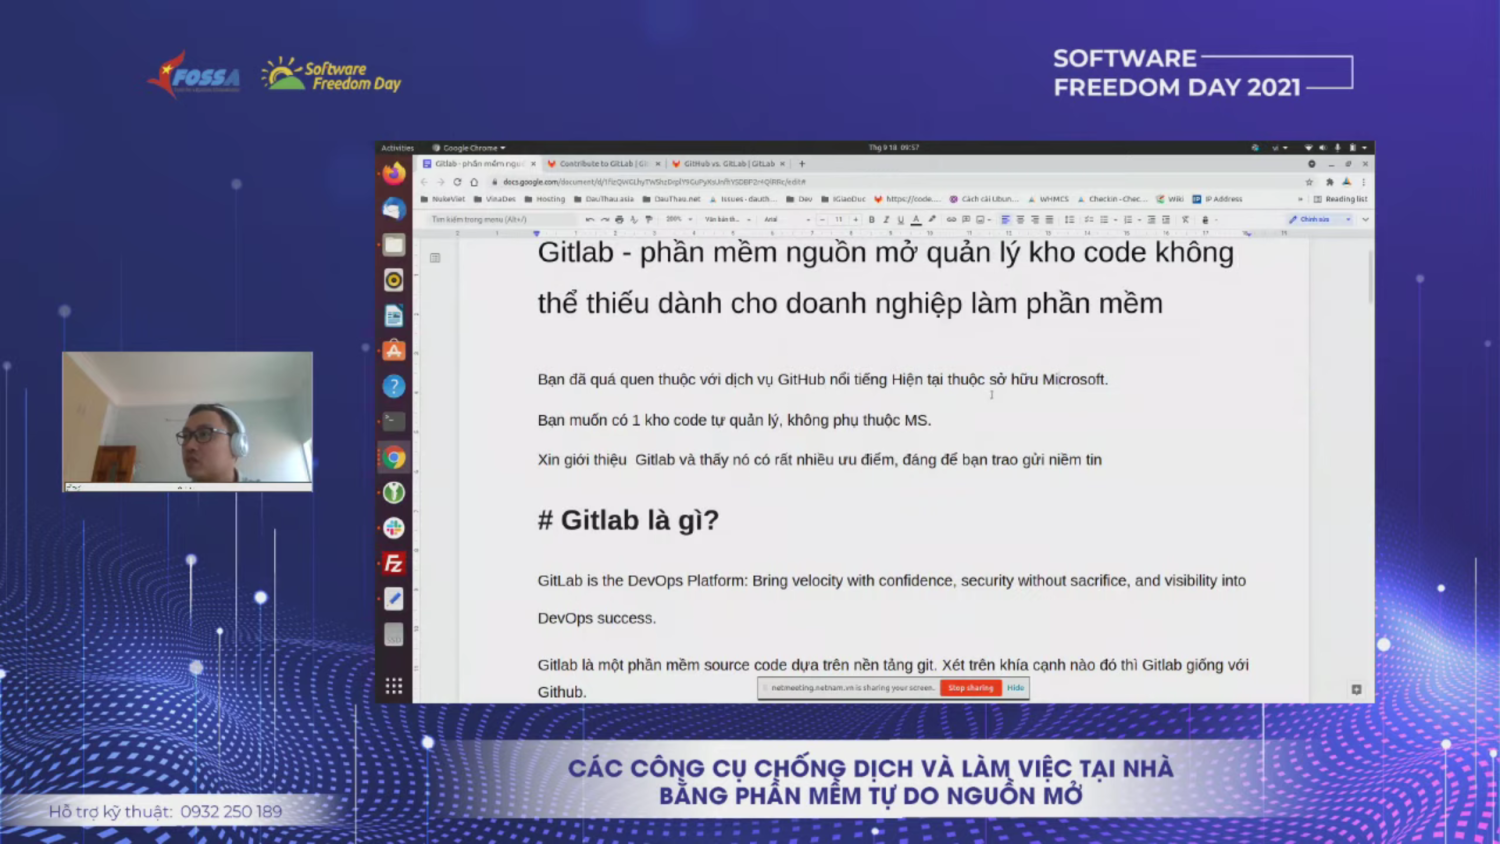 Diễn giả Vũ Văn Thảo với chủ đề về Gitlab và ứng dụng không thể thiếu cho doanh nghiệp